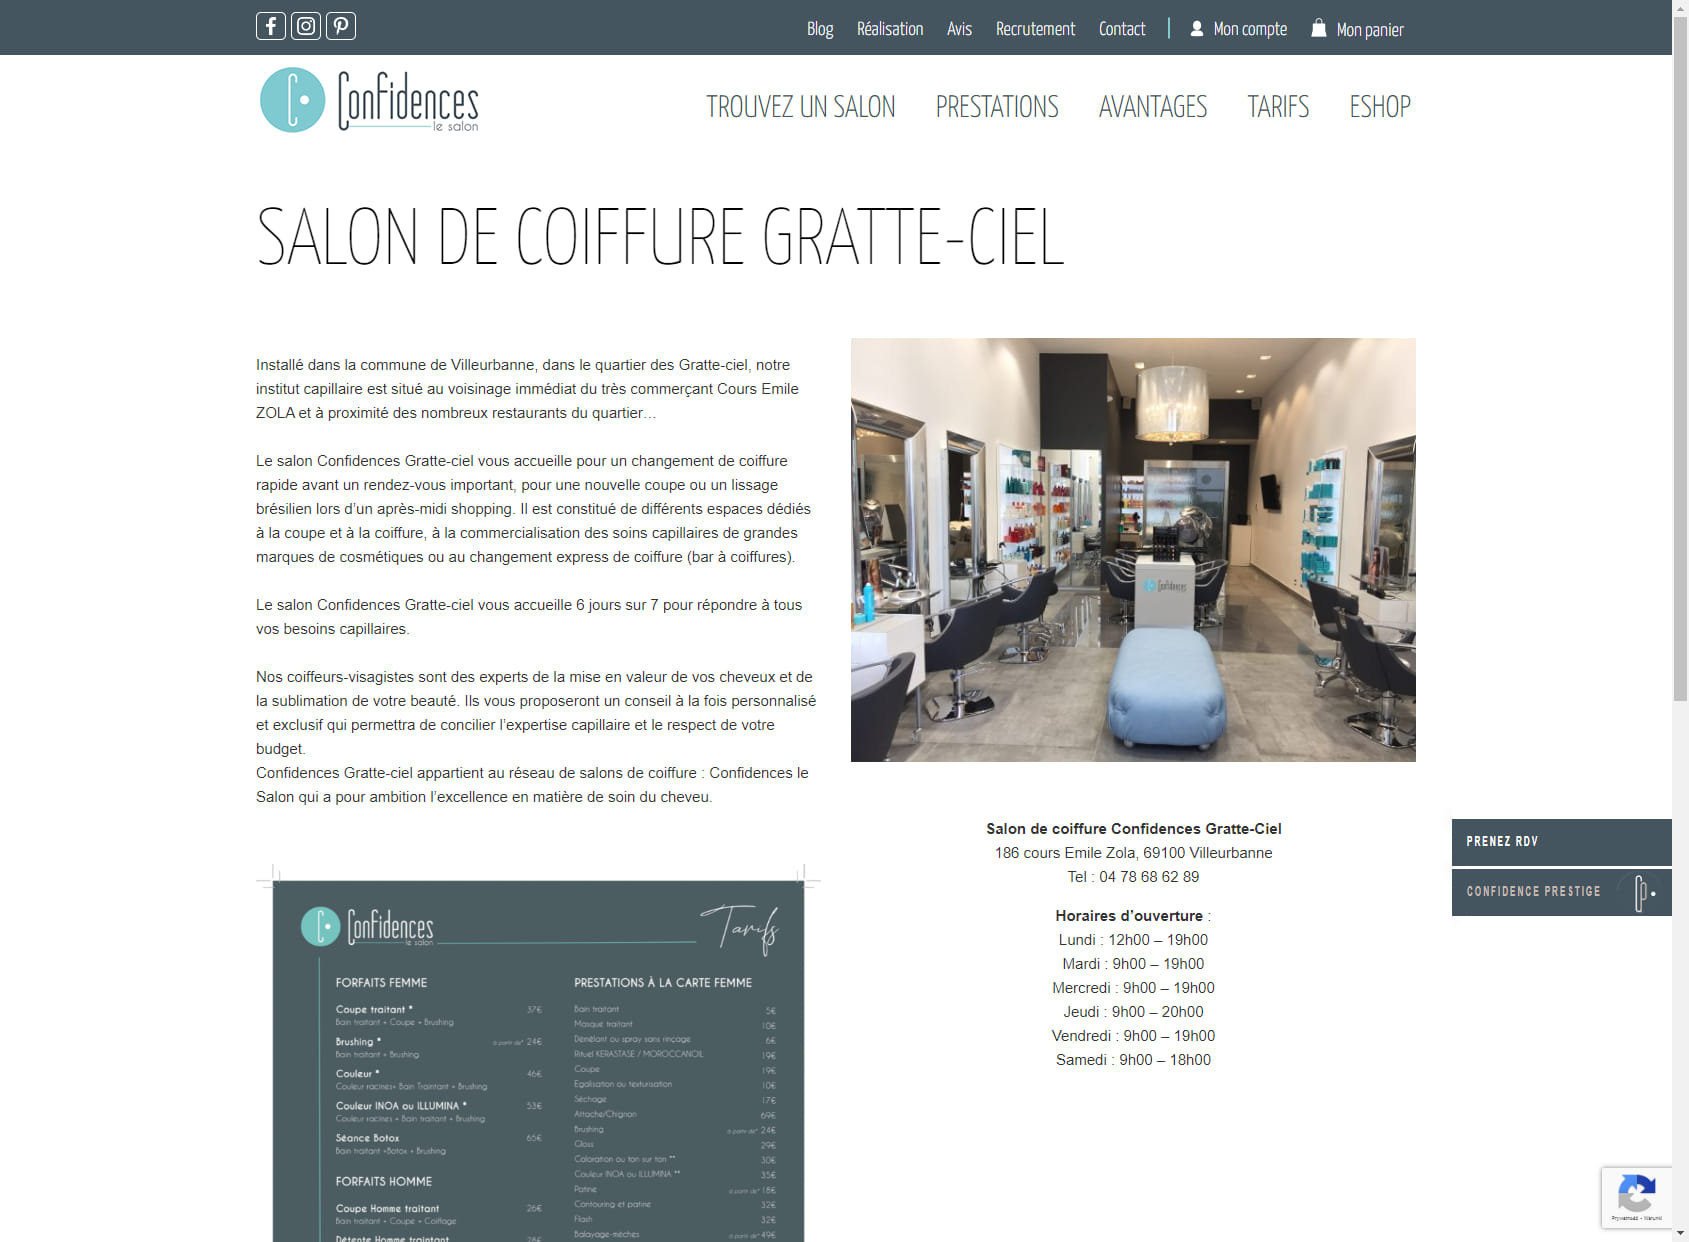 Confidences Le Salon - Gratte Ciel - Villeurbanne - Coiffure